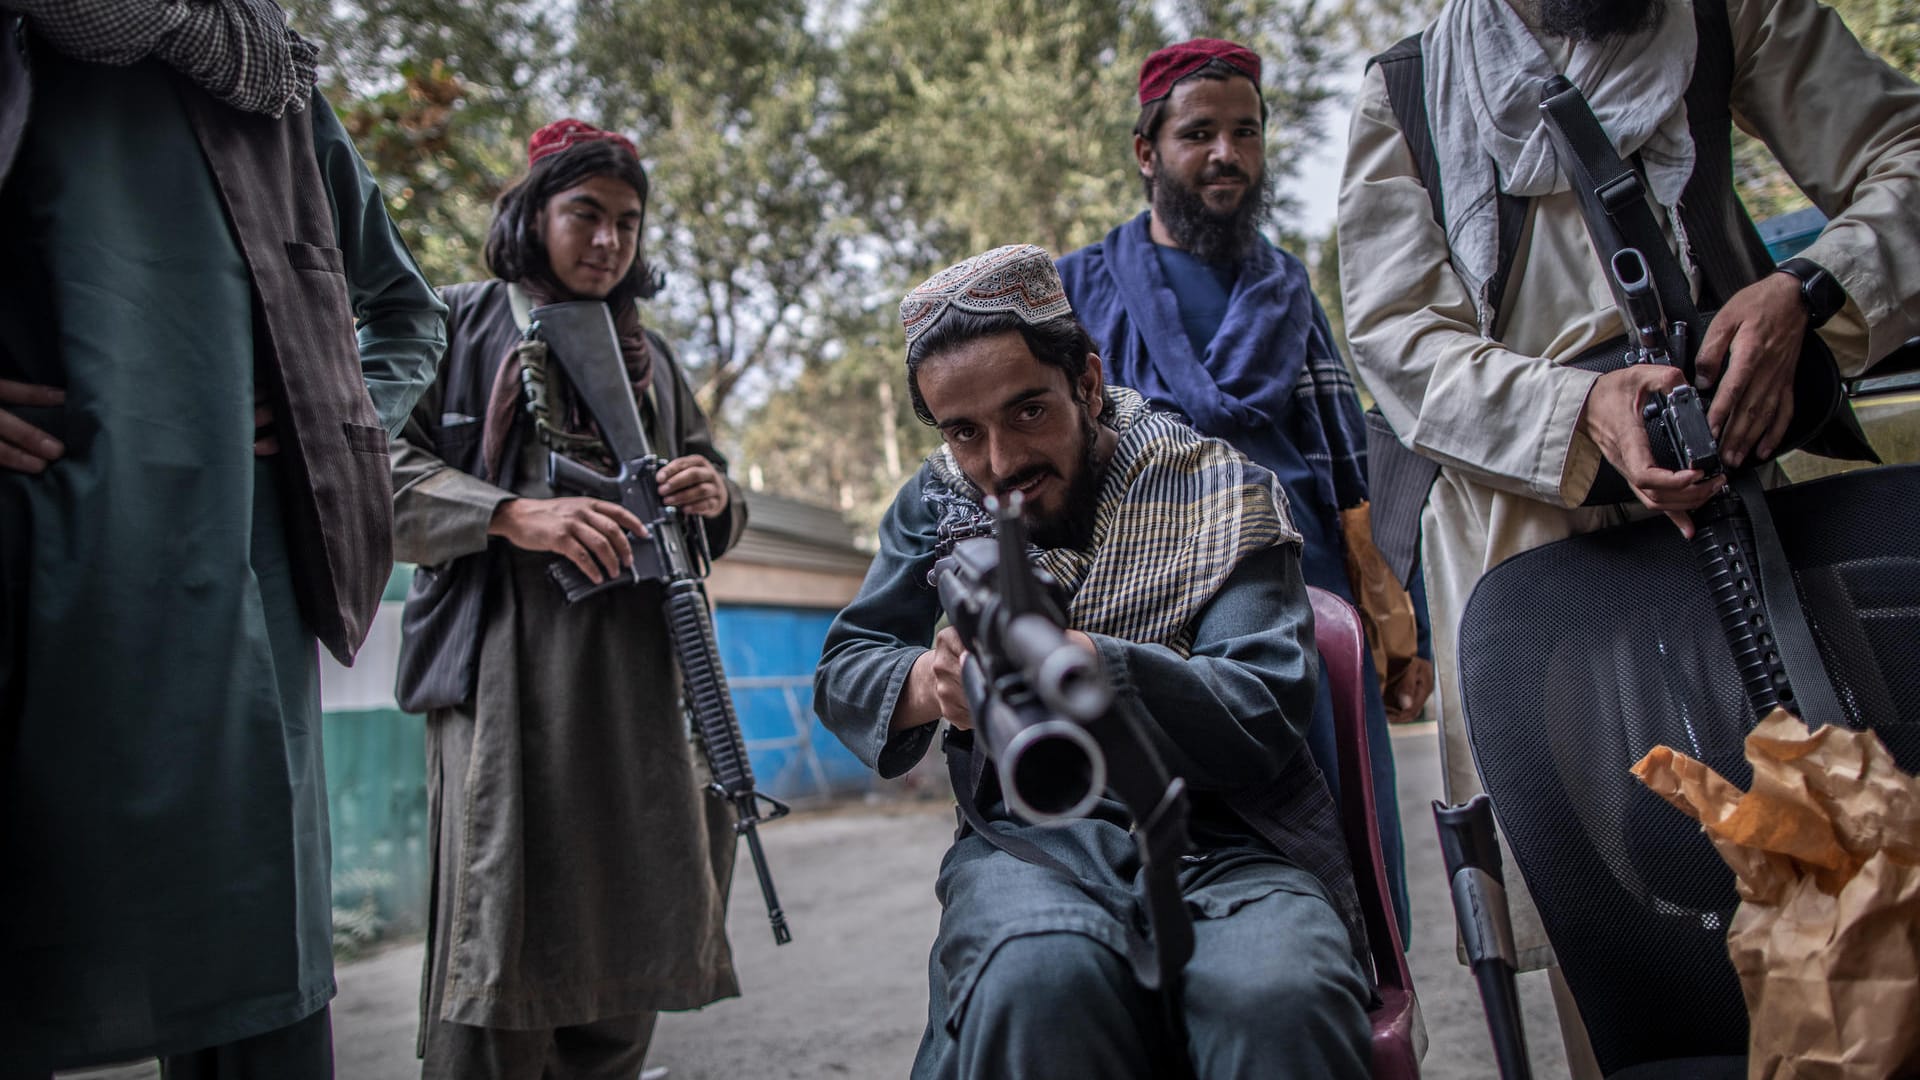 Ein Jahr nach dem Afghanistan-Chaos: Niemand sollte sich wundern